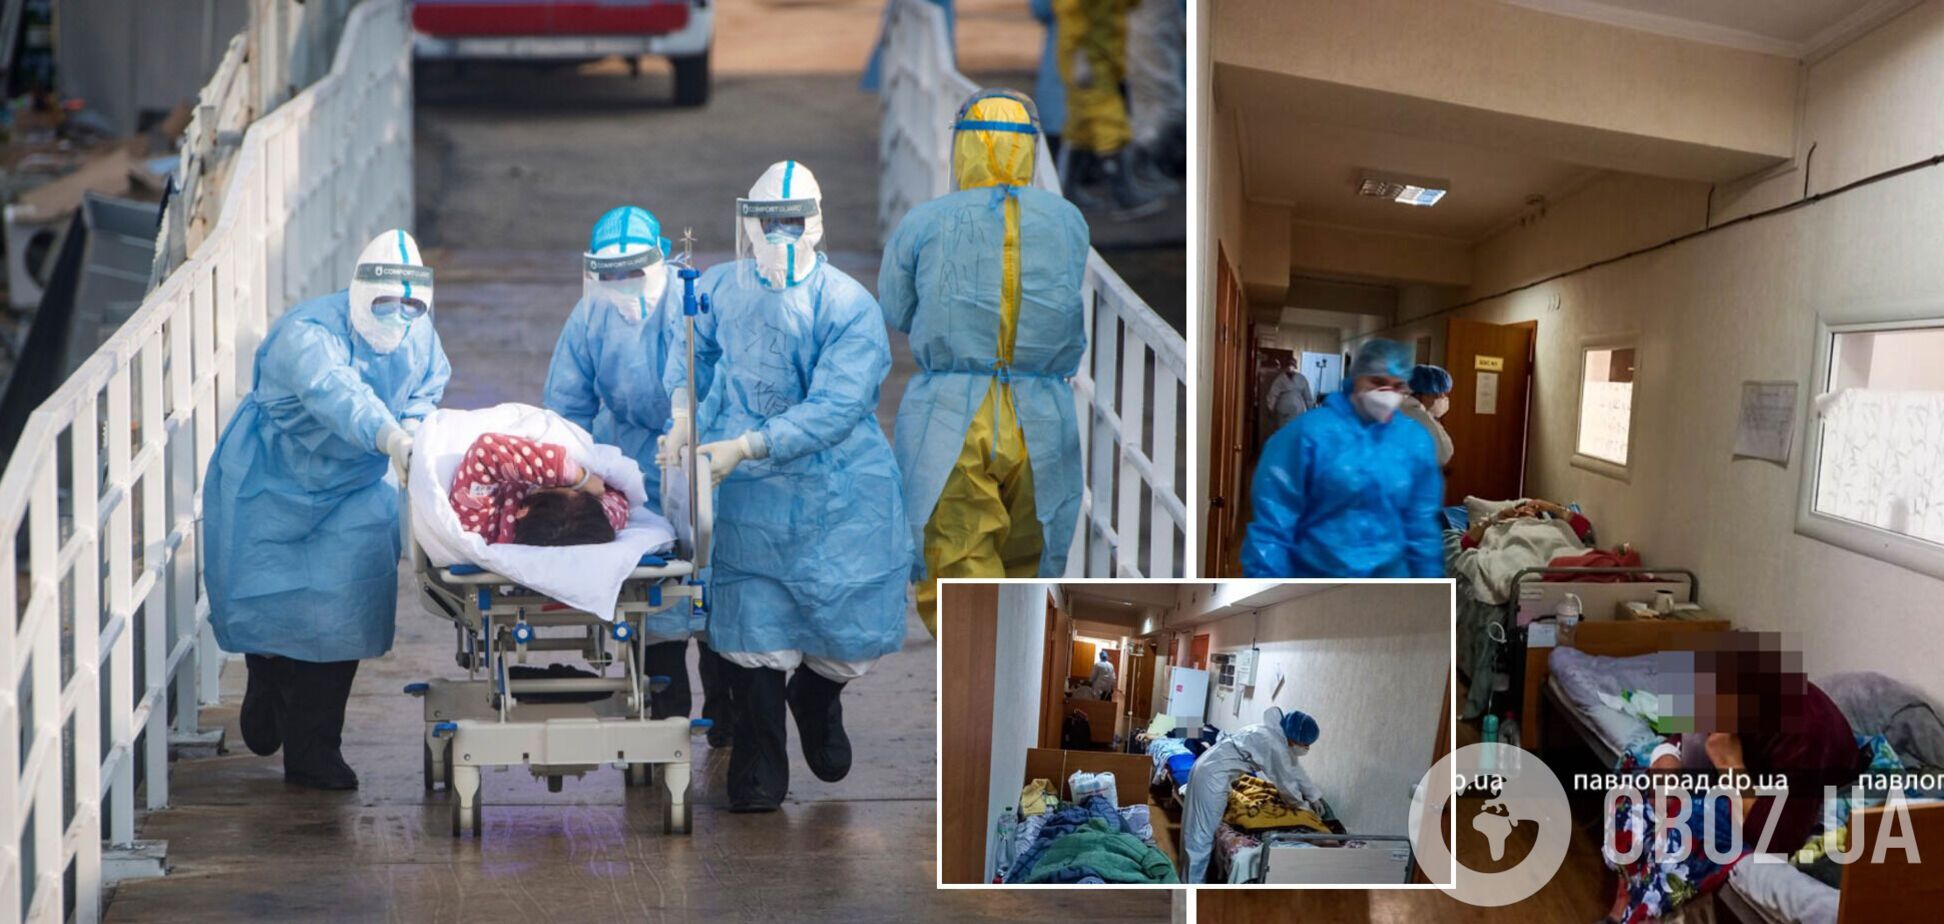 З 200 пацієнтів лише двоє вакциновані: у Павлограді хворі з COVID-19 лежать у коридорах. Фото